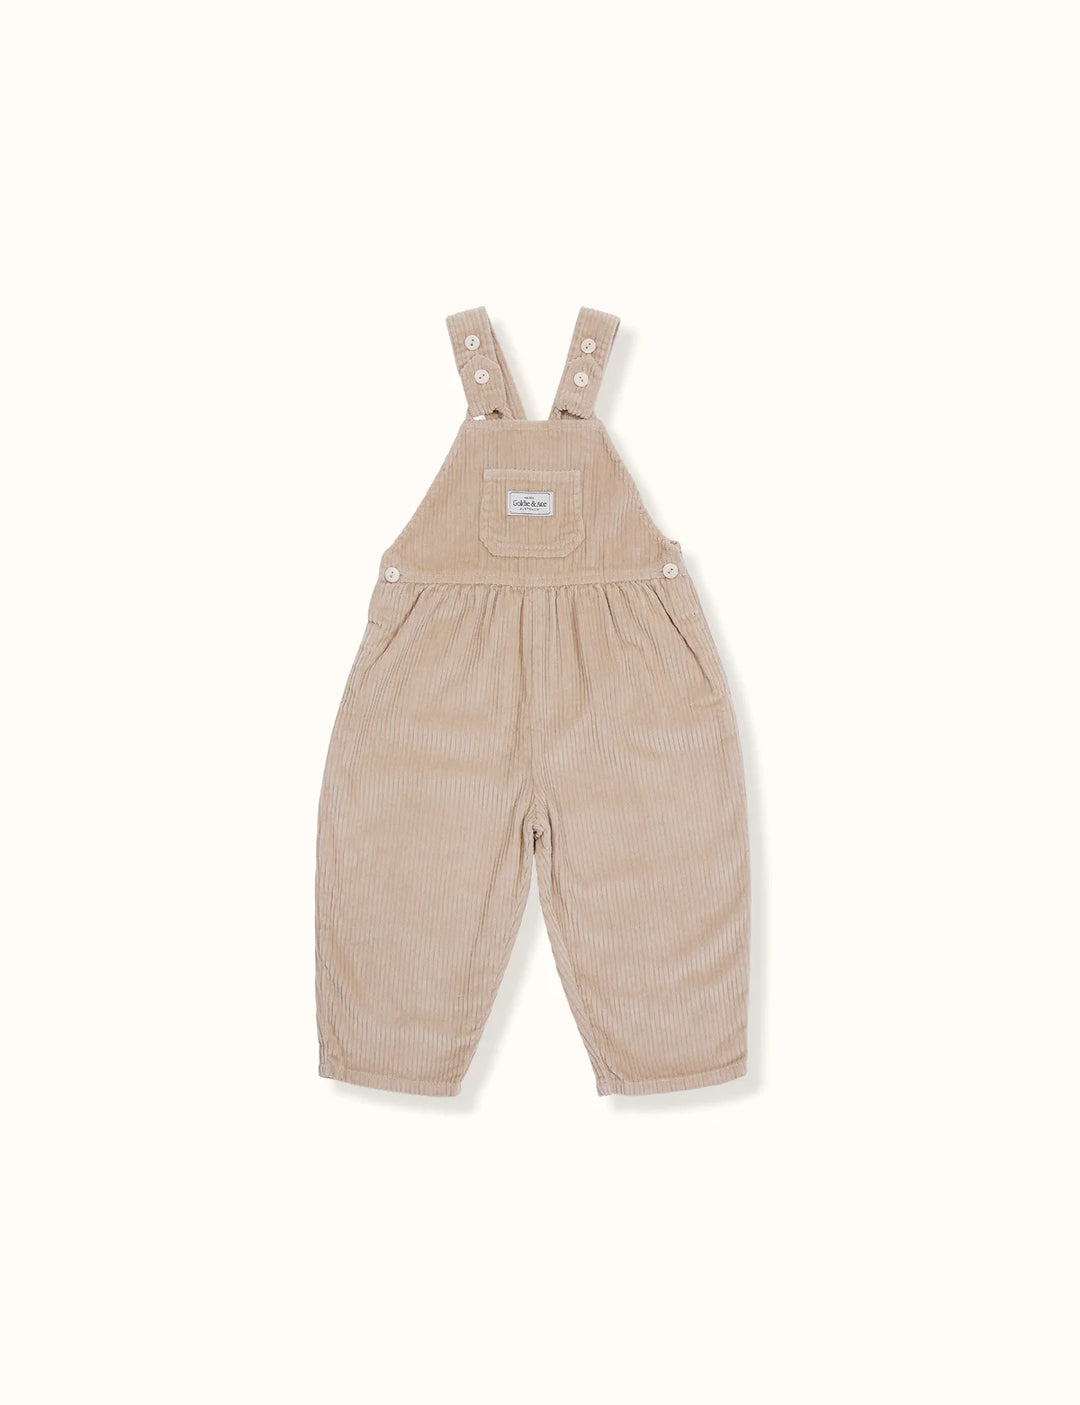 Sammy overalls beige - JL & CO. boutique 